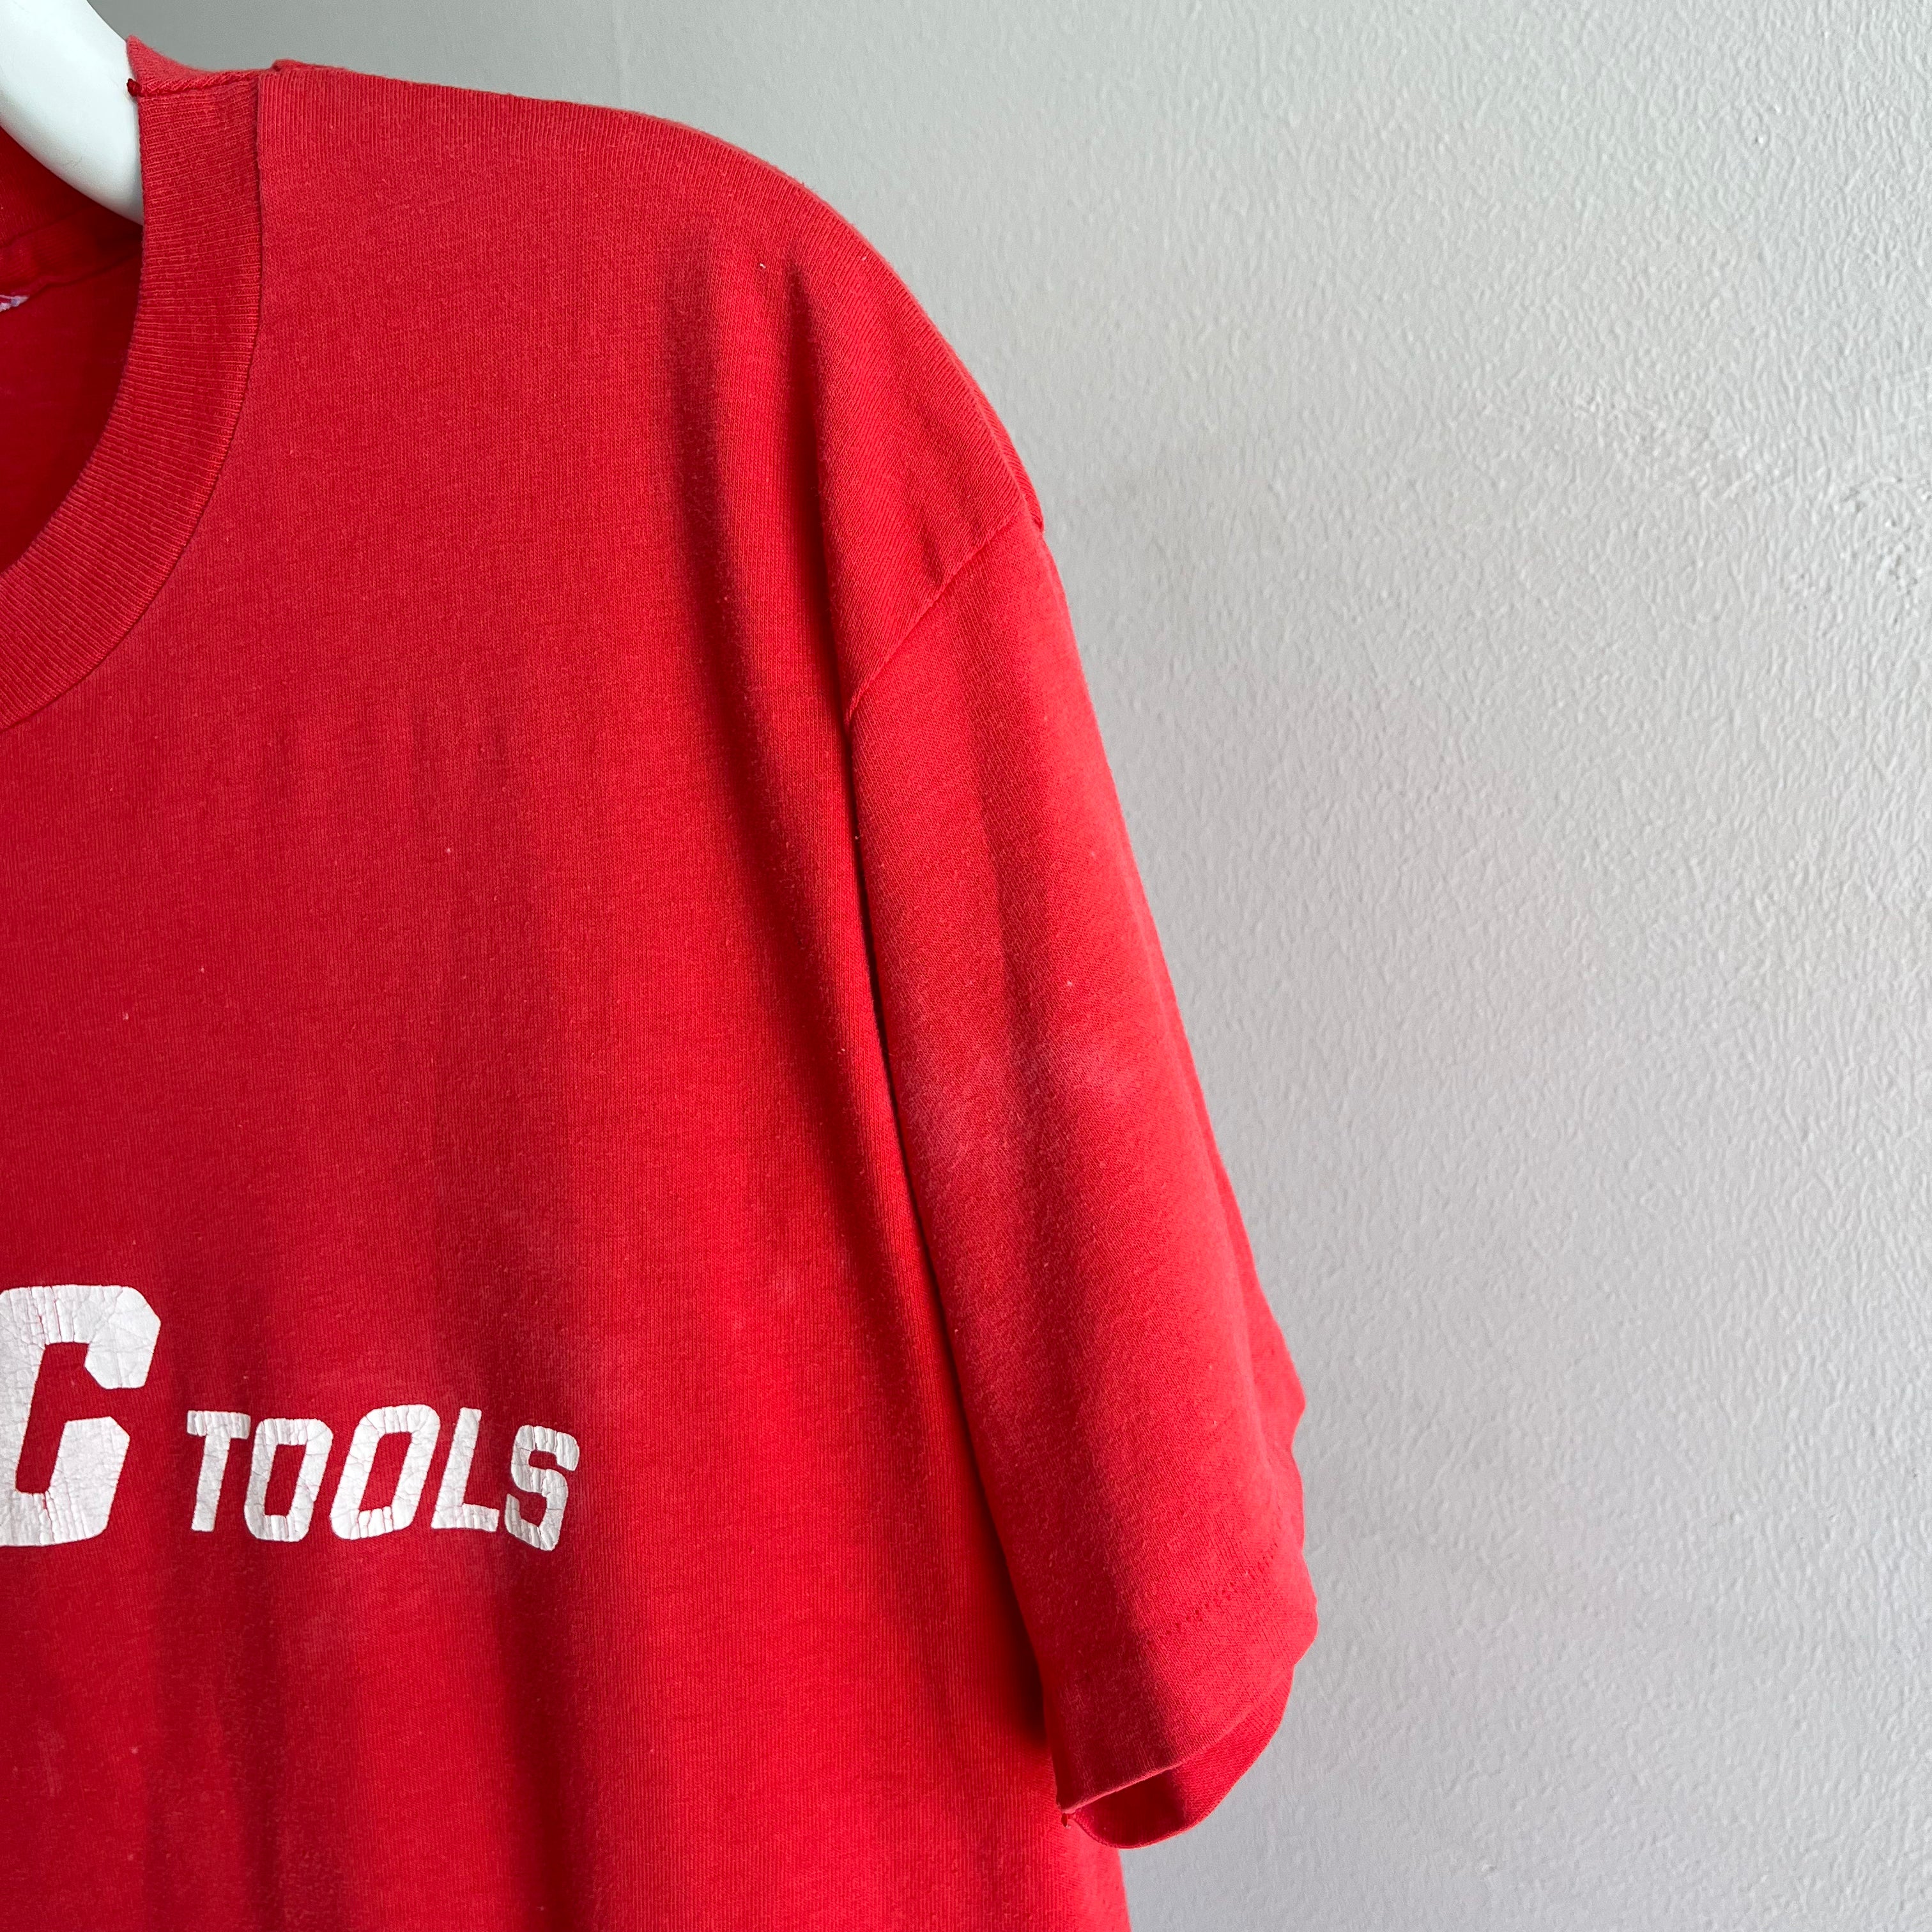 1980s Mac Tools T-Shirt